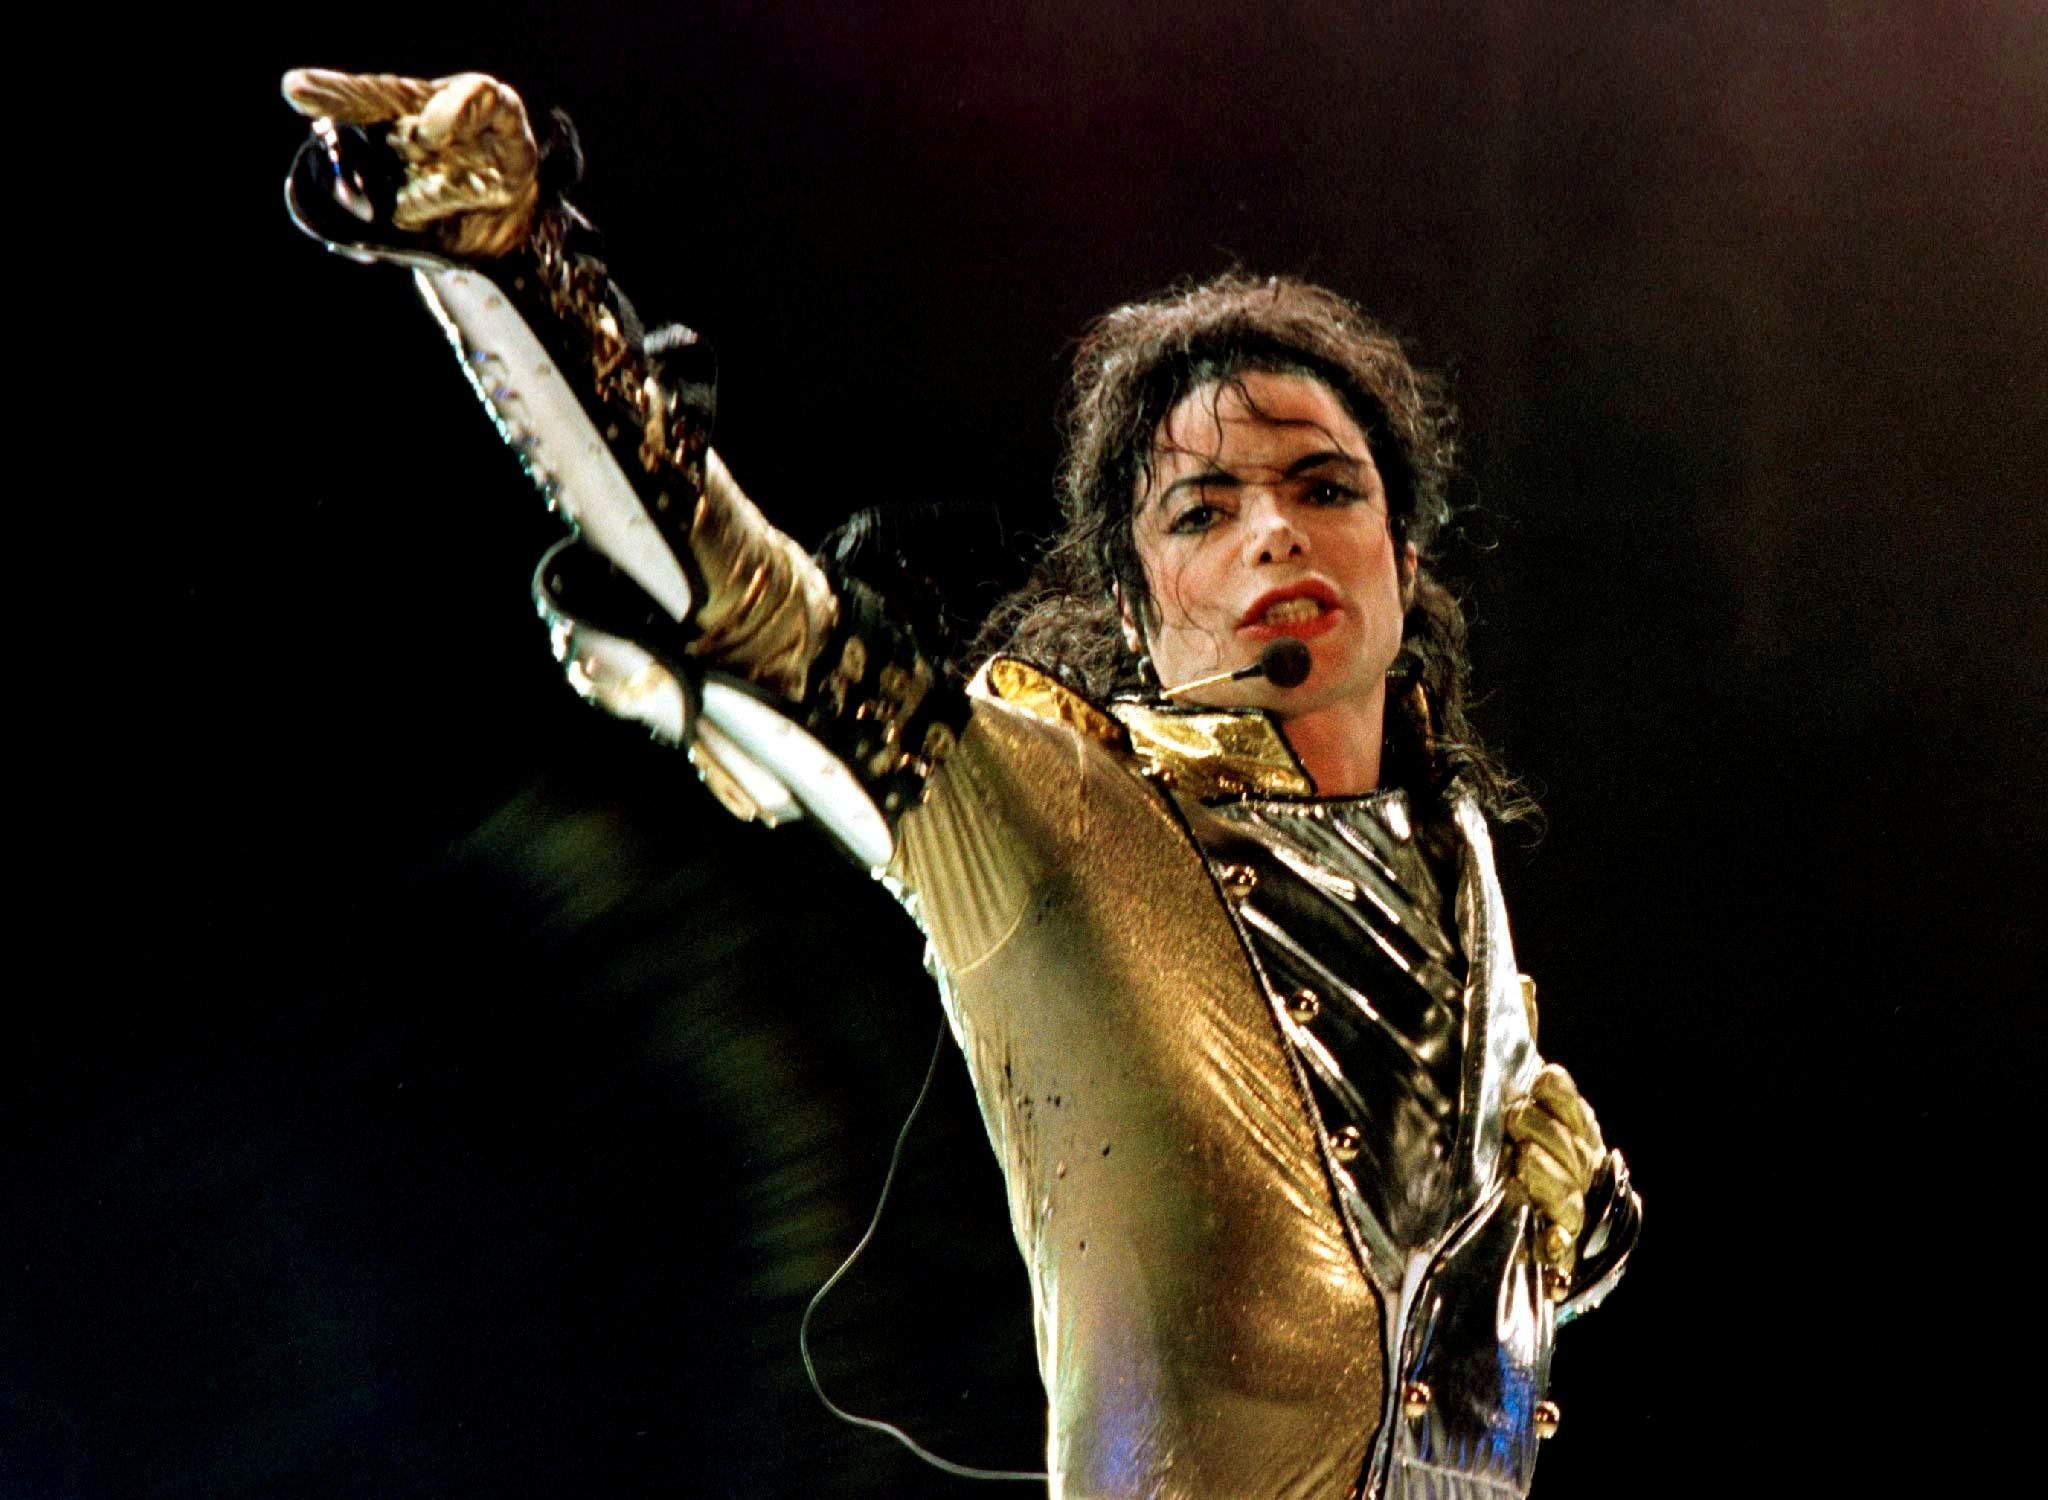 Den avdøde popstjernen Michael Jackson, her avbildet under en konsert i Wien i 1997,